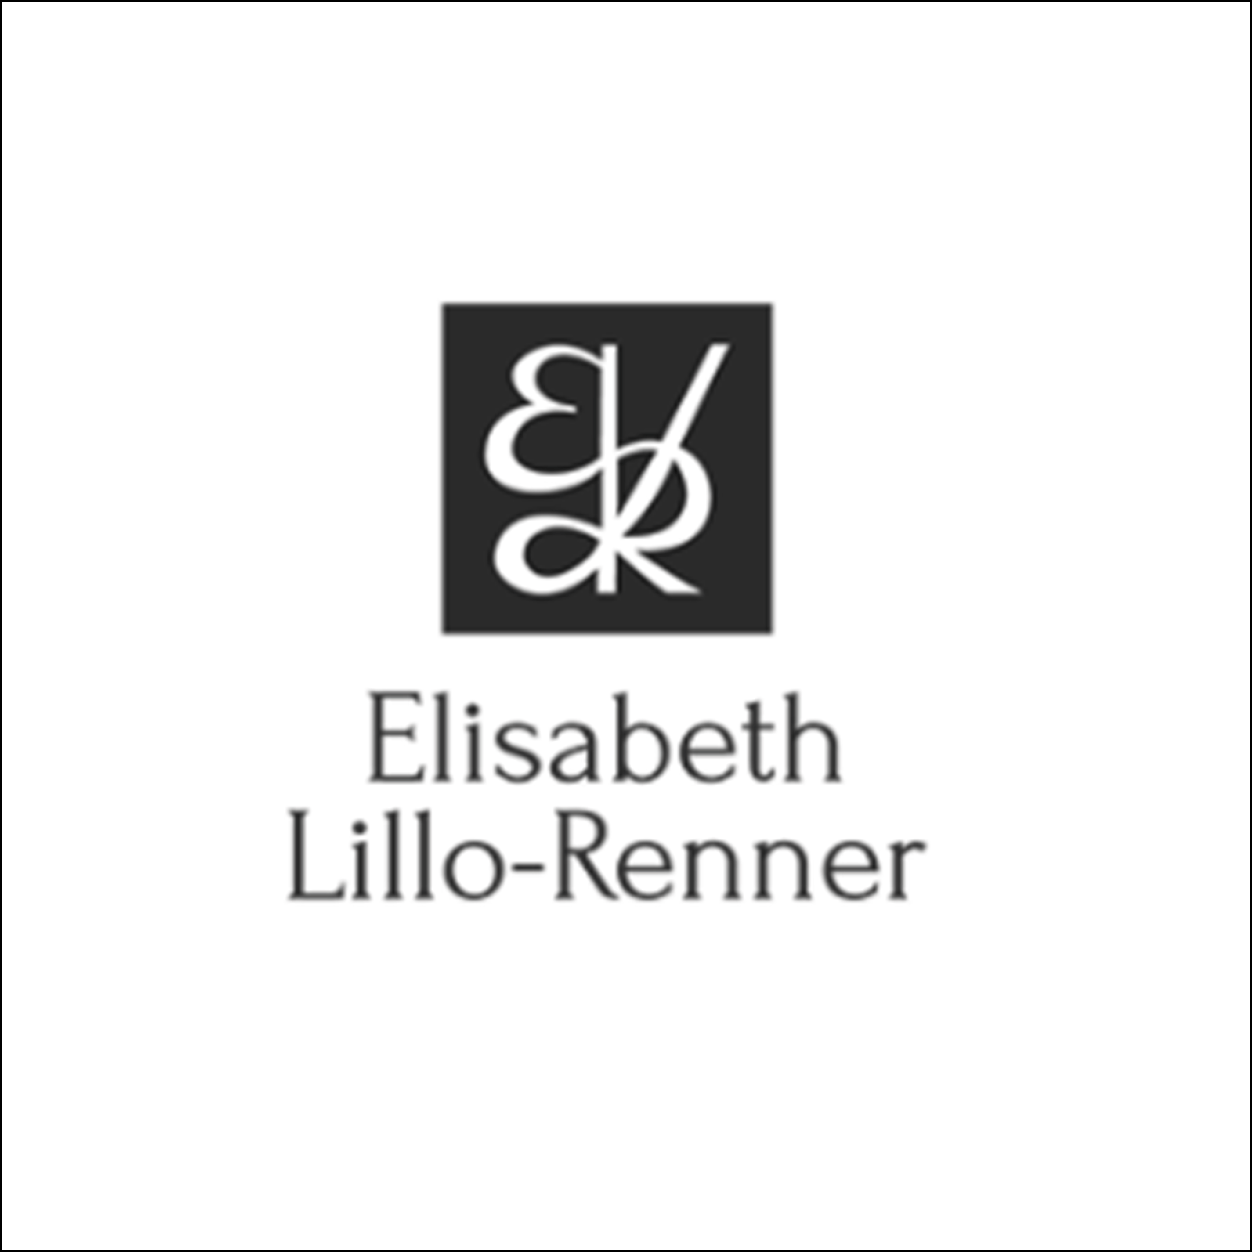 Elisabeth Lillo-Renner